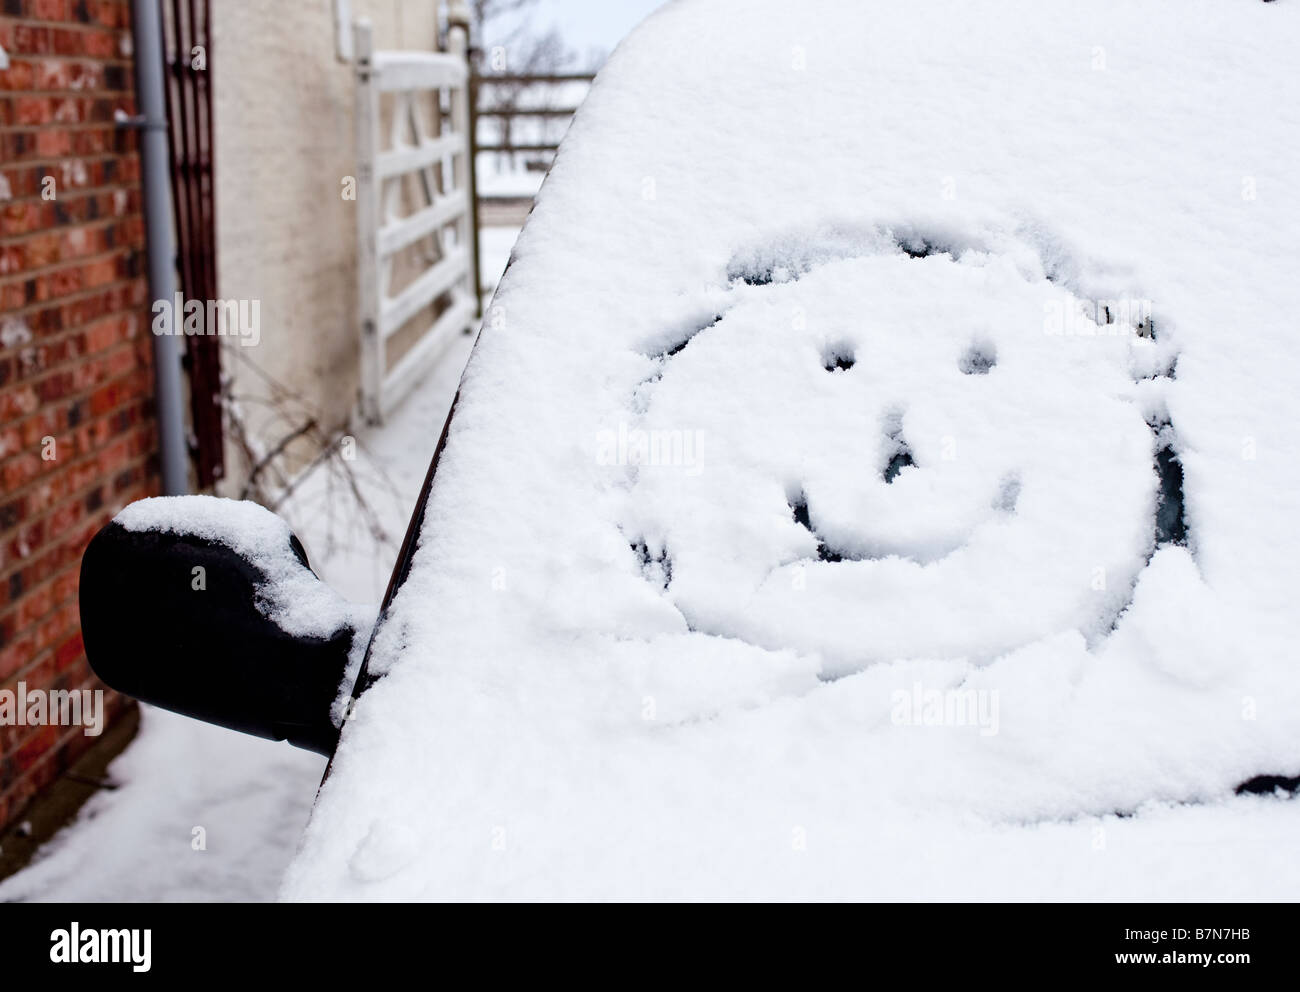 Cara sonriente dibujado en la nieve fresca en un coche parabrisas Foto de stock